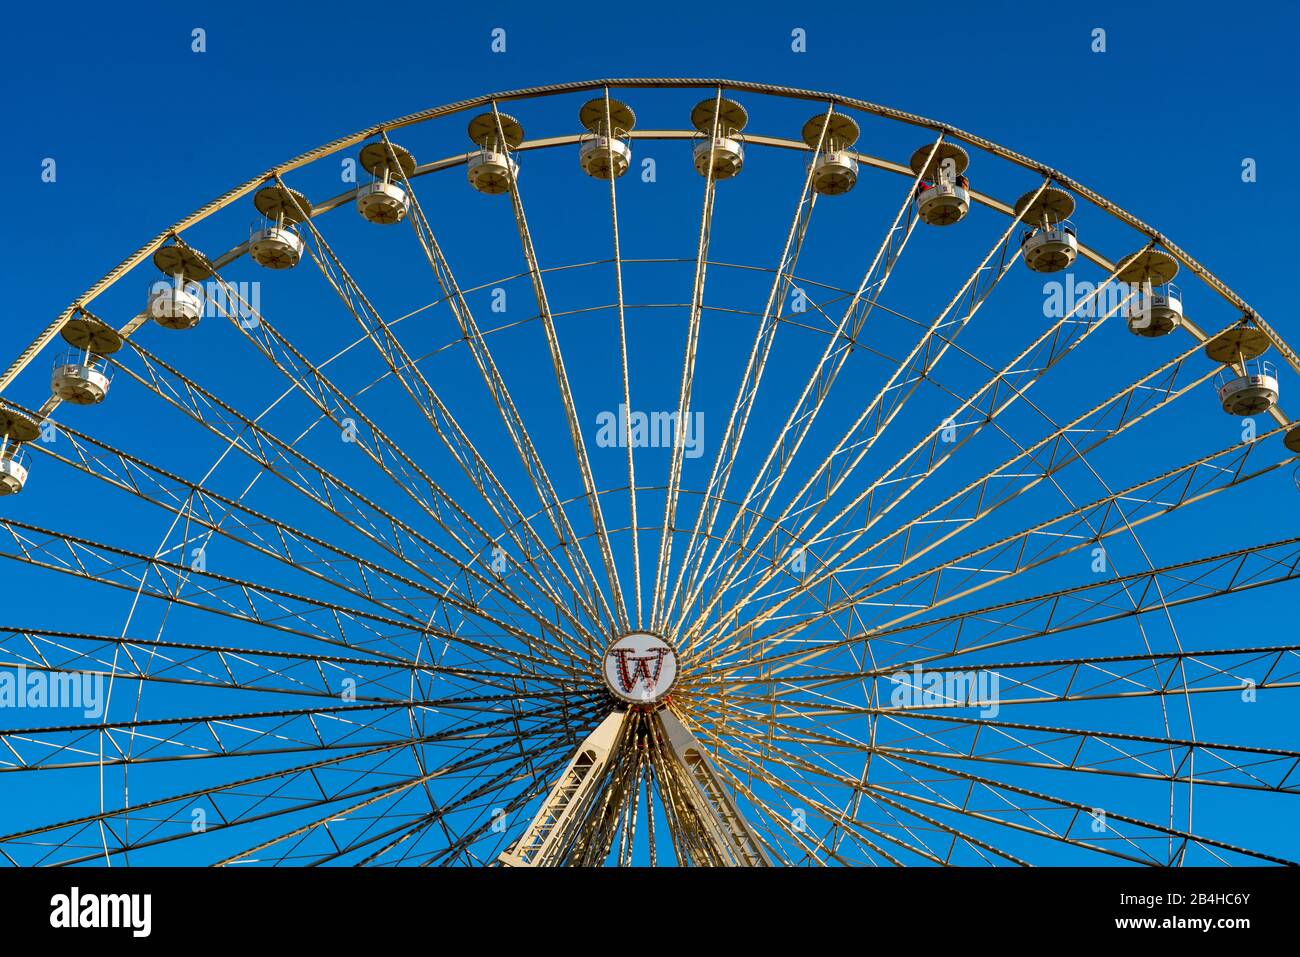 Riesenrad, mit offenen Gondeln, Blauer Himmel, auf dem Burgplatz en Essen, Foto de stock